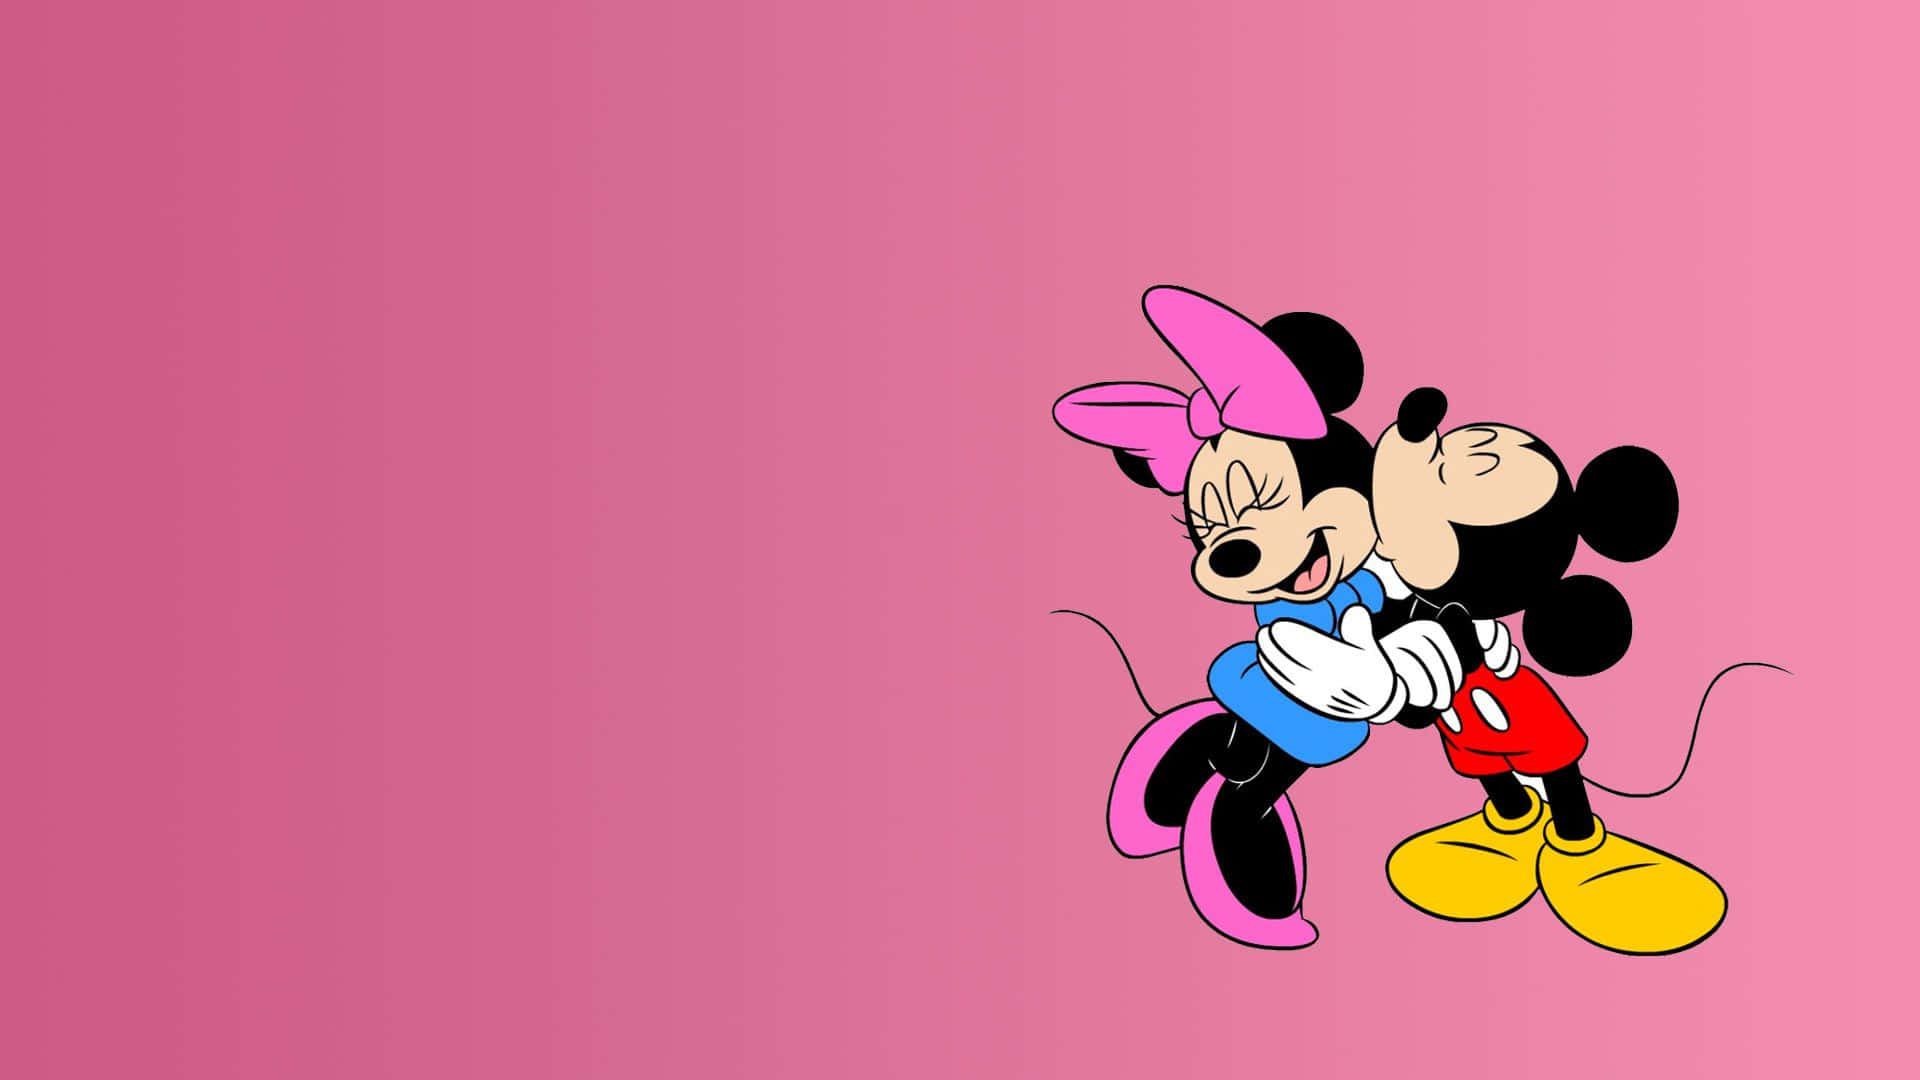 Tãofofa Como Um Botão, Minnie Mouse Radiante Em Rosa. Papel de Parede